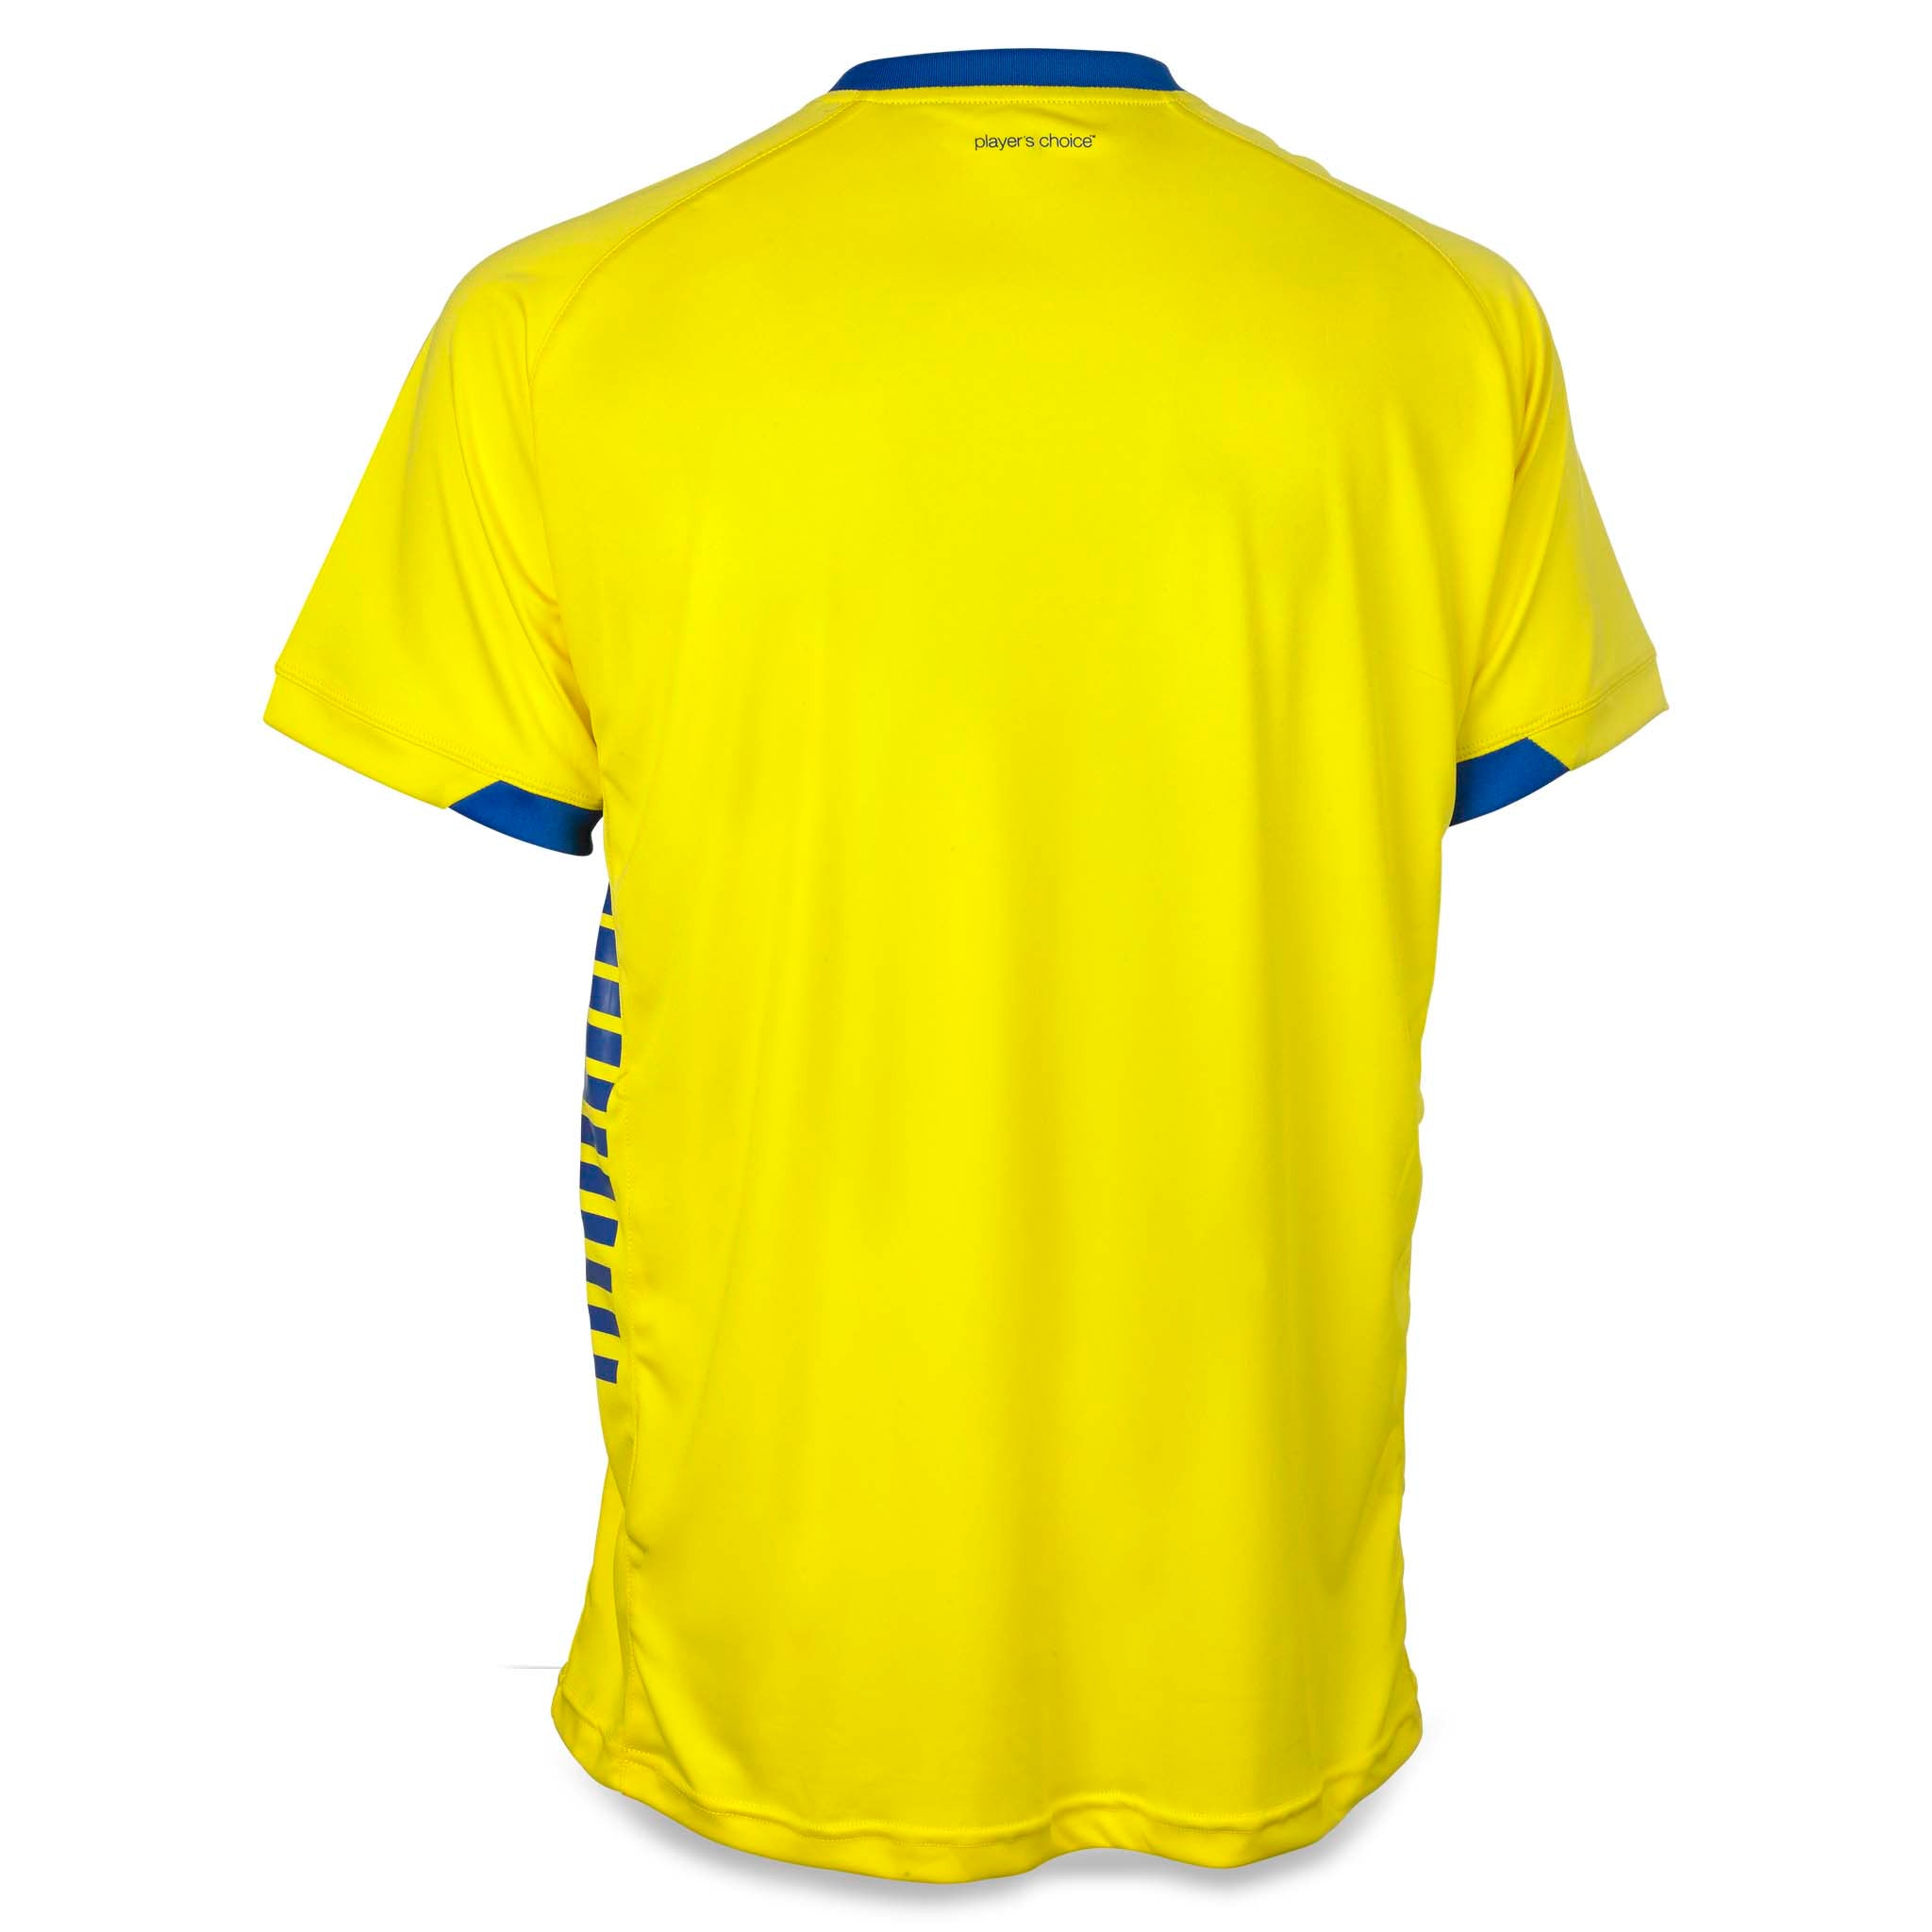 Spain Kortærmet spillertrøje #farve_ #farve_gul/blå #farve_gul/blå